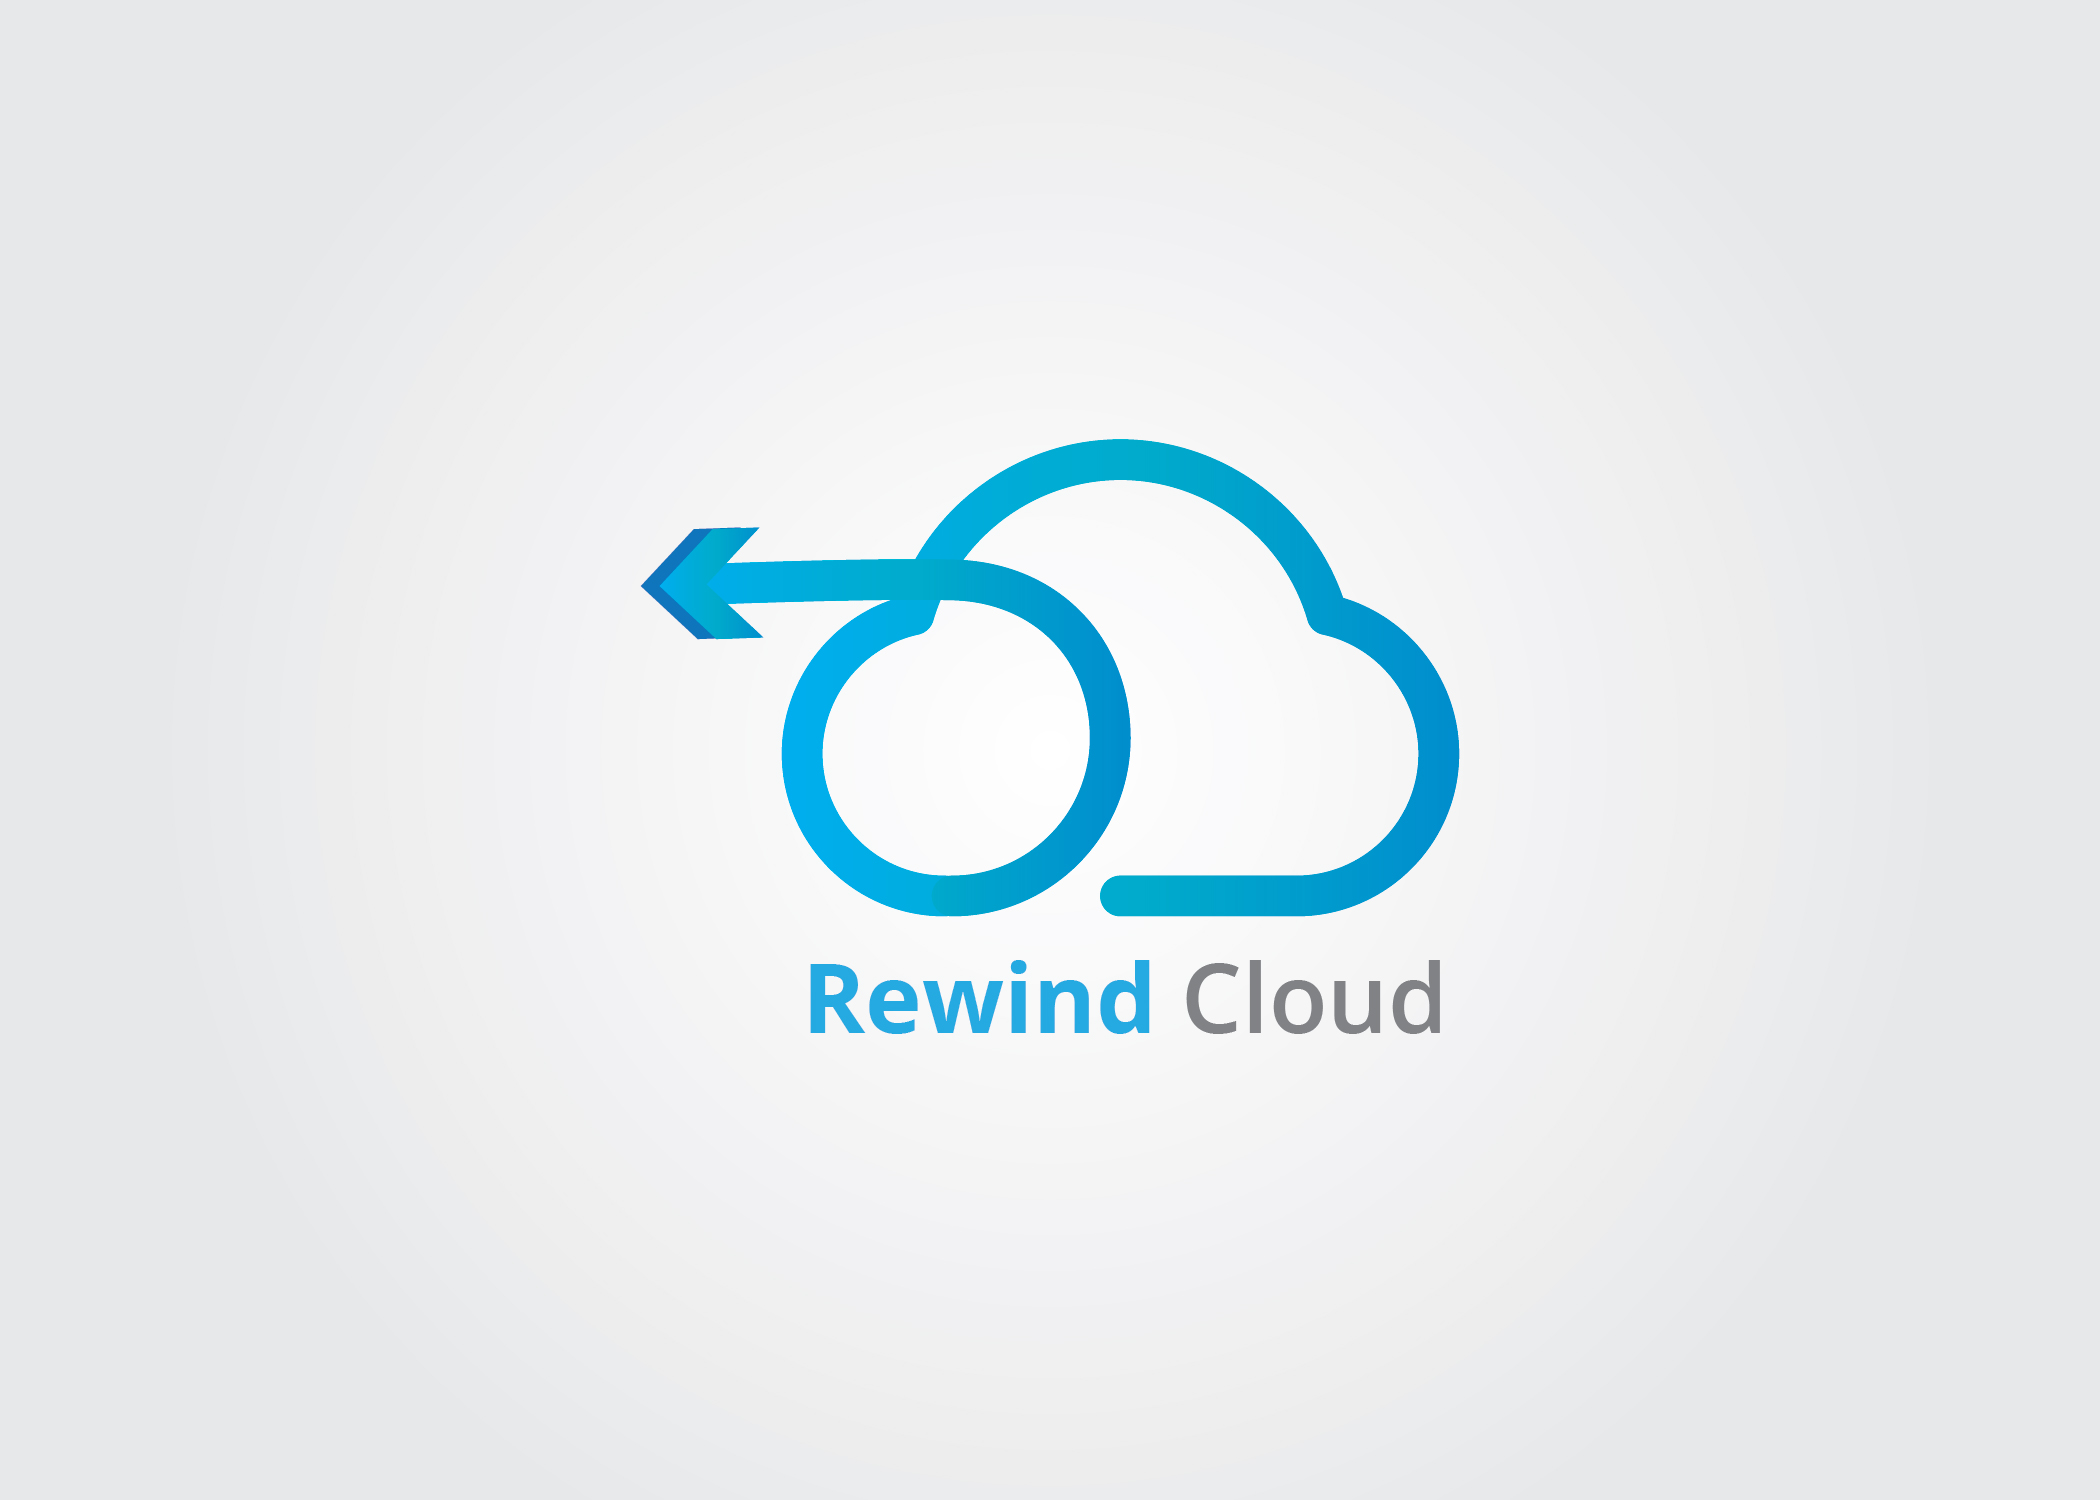 Rewind Cloud